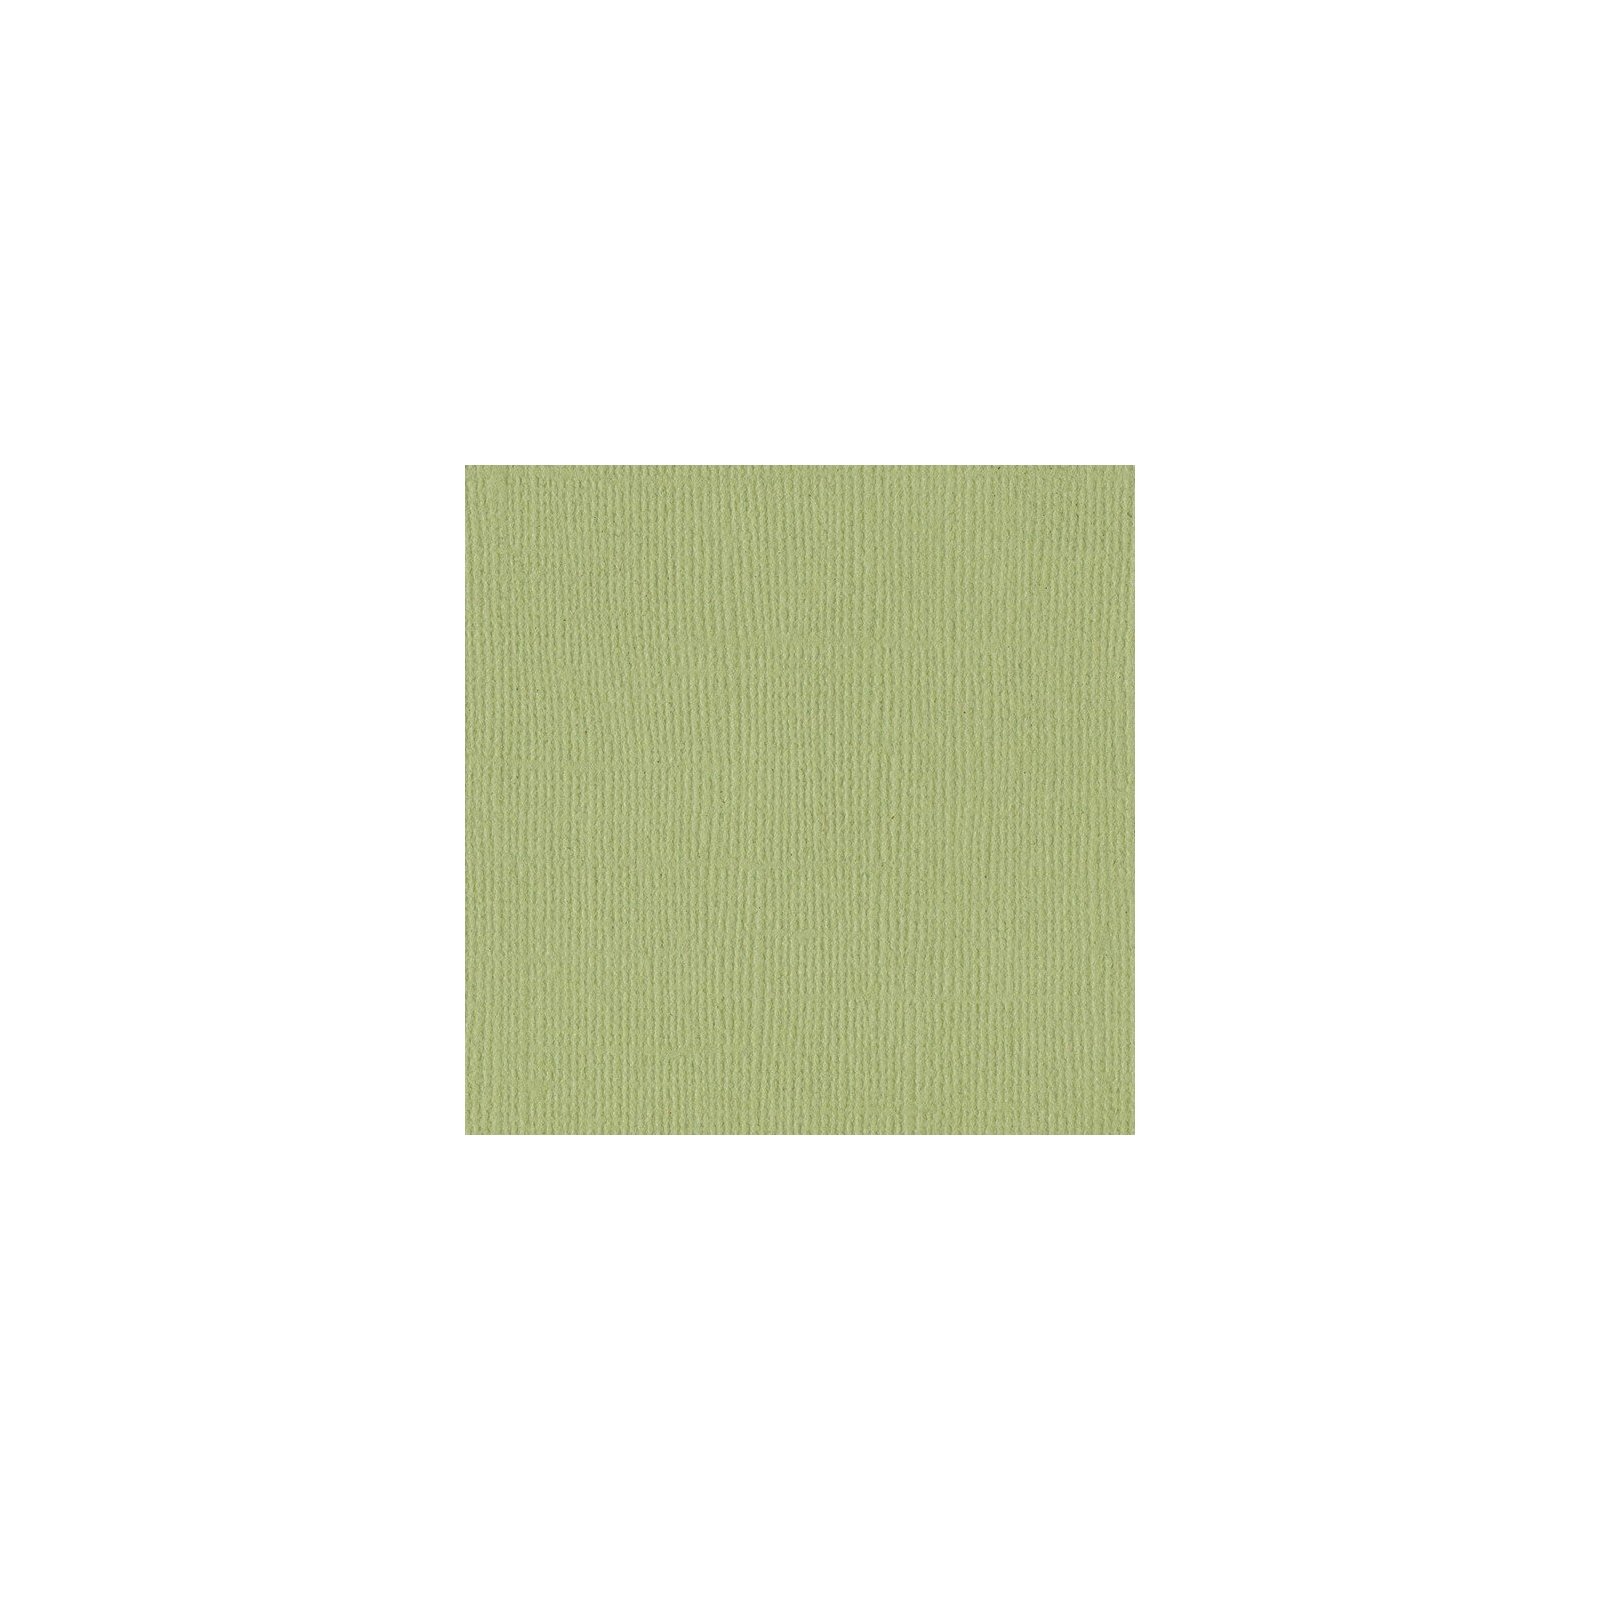 Papier vert clair  « Pear » - Poire - Mono - Bazzill Basics Paper